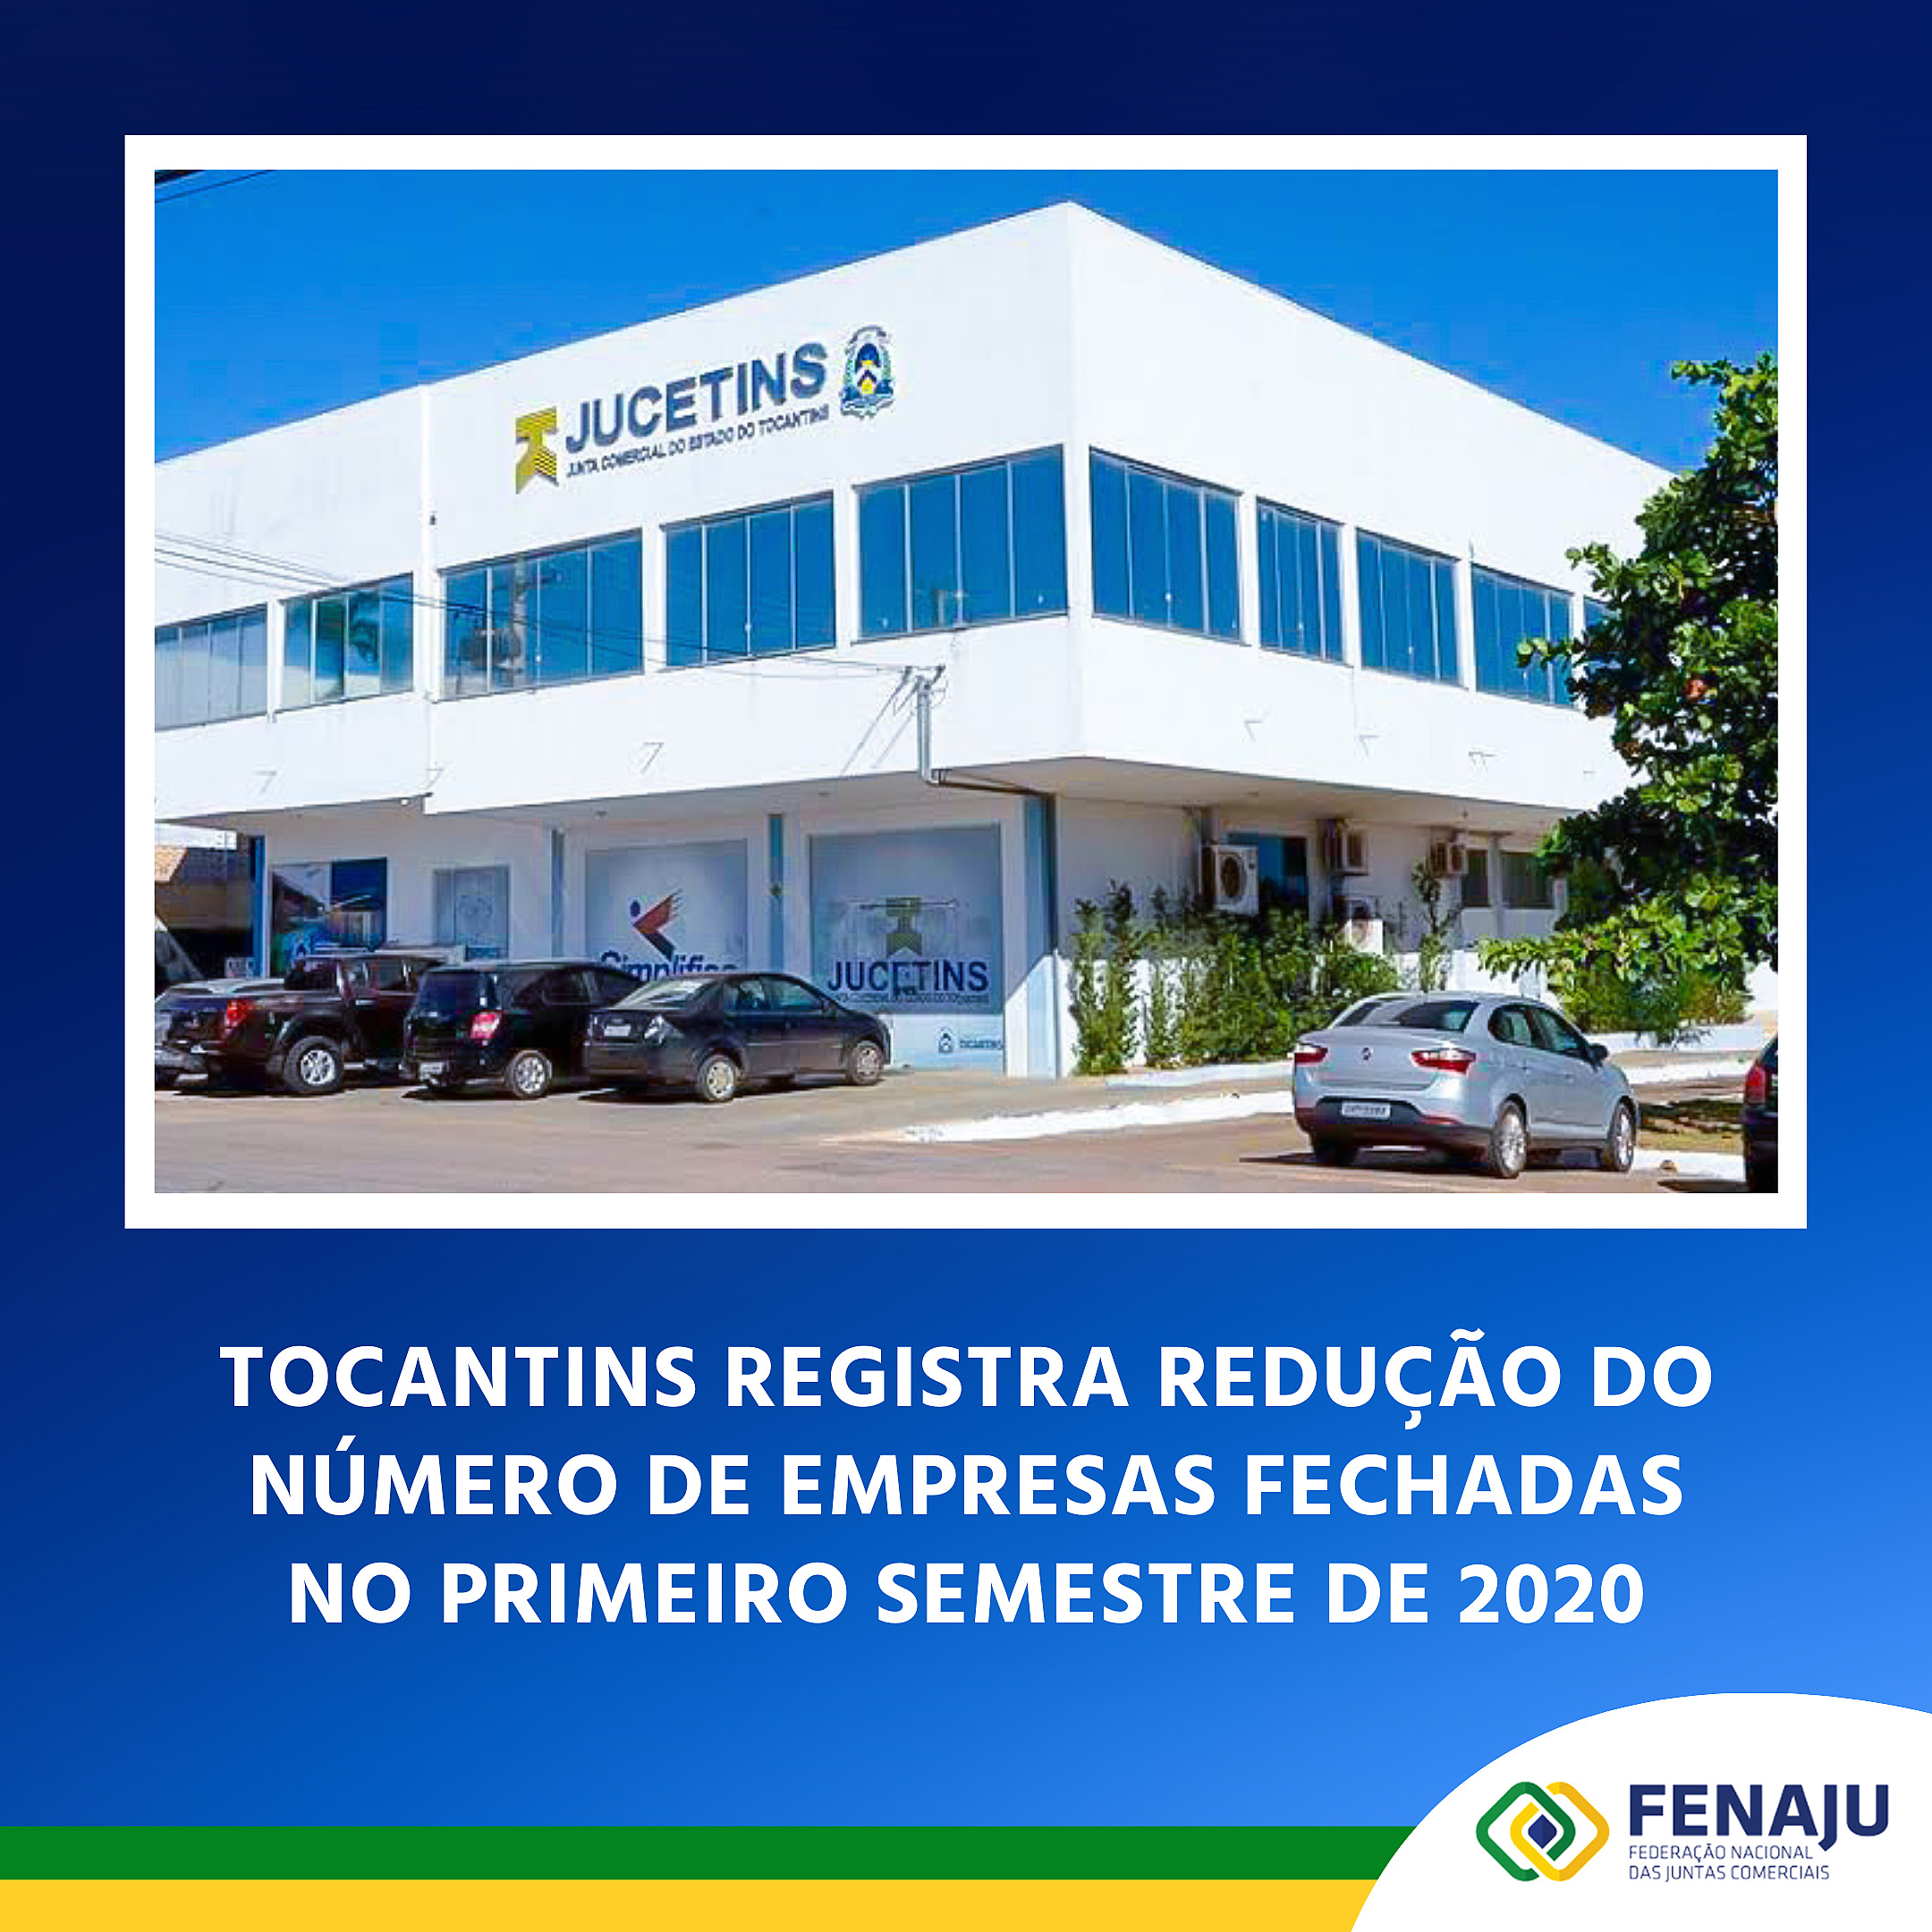 You are currently viewing Tocantins registra redução no número de empresas fechadas no primeiro semestre de 2020